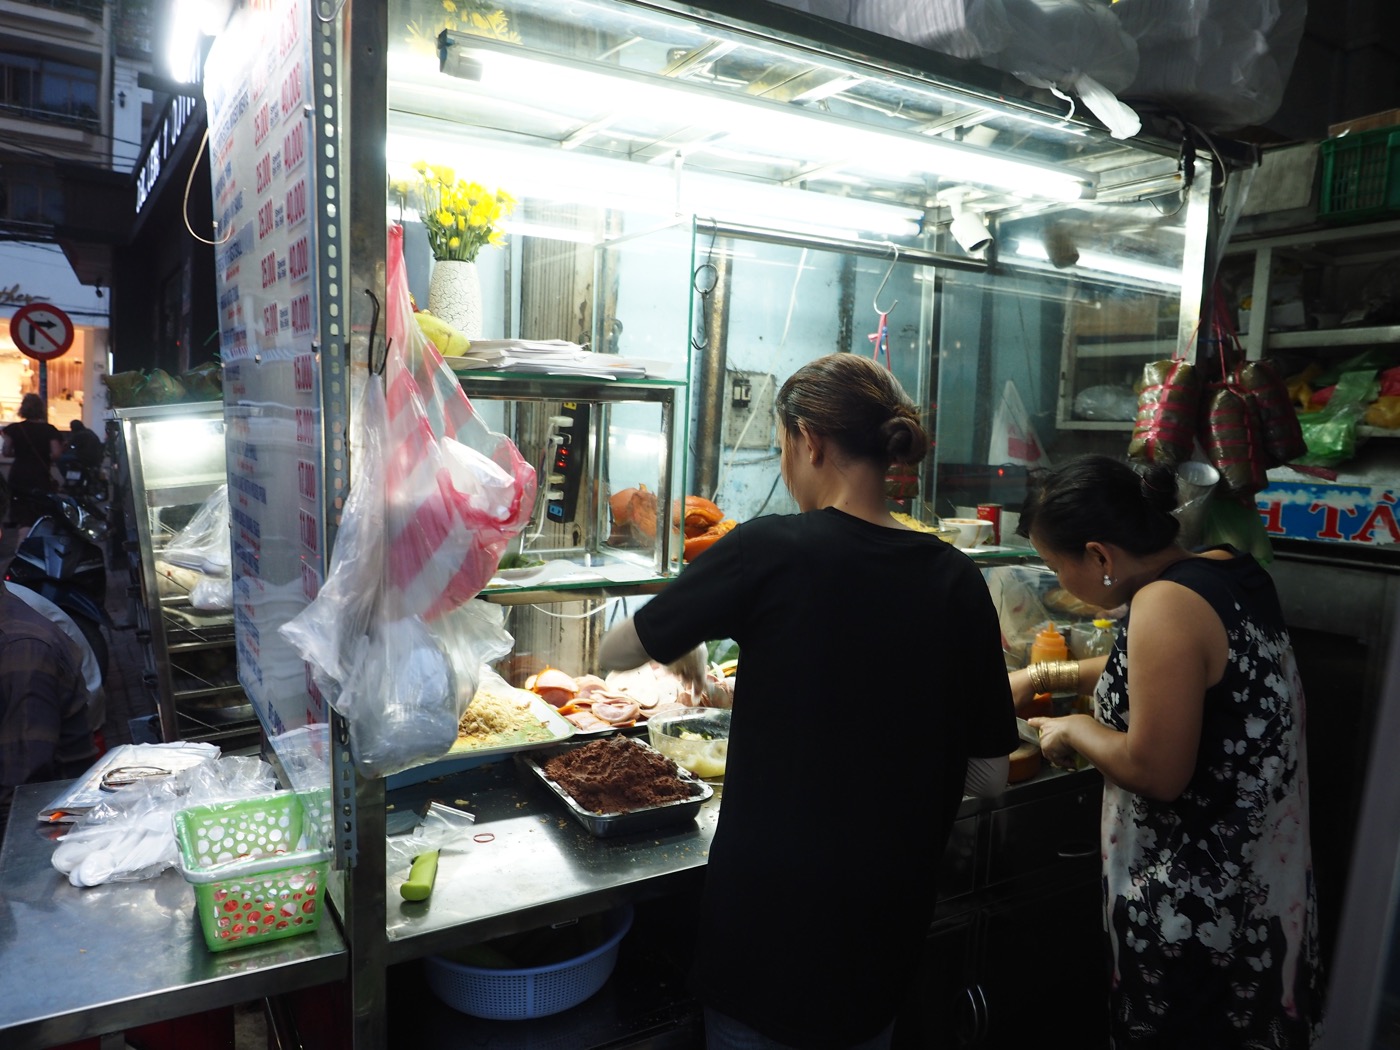 胡志明市美食 Bánh Mì Hồng Hoa 越南法包與路邊攤小吃 Quán Nước Mía 93 - 一口冒險 Bitesized Adventure